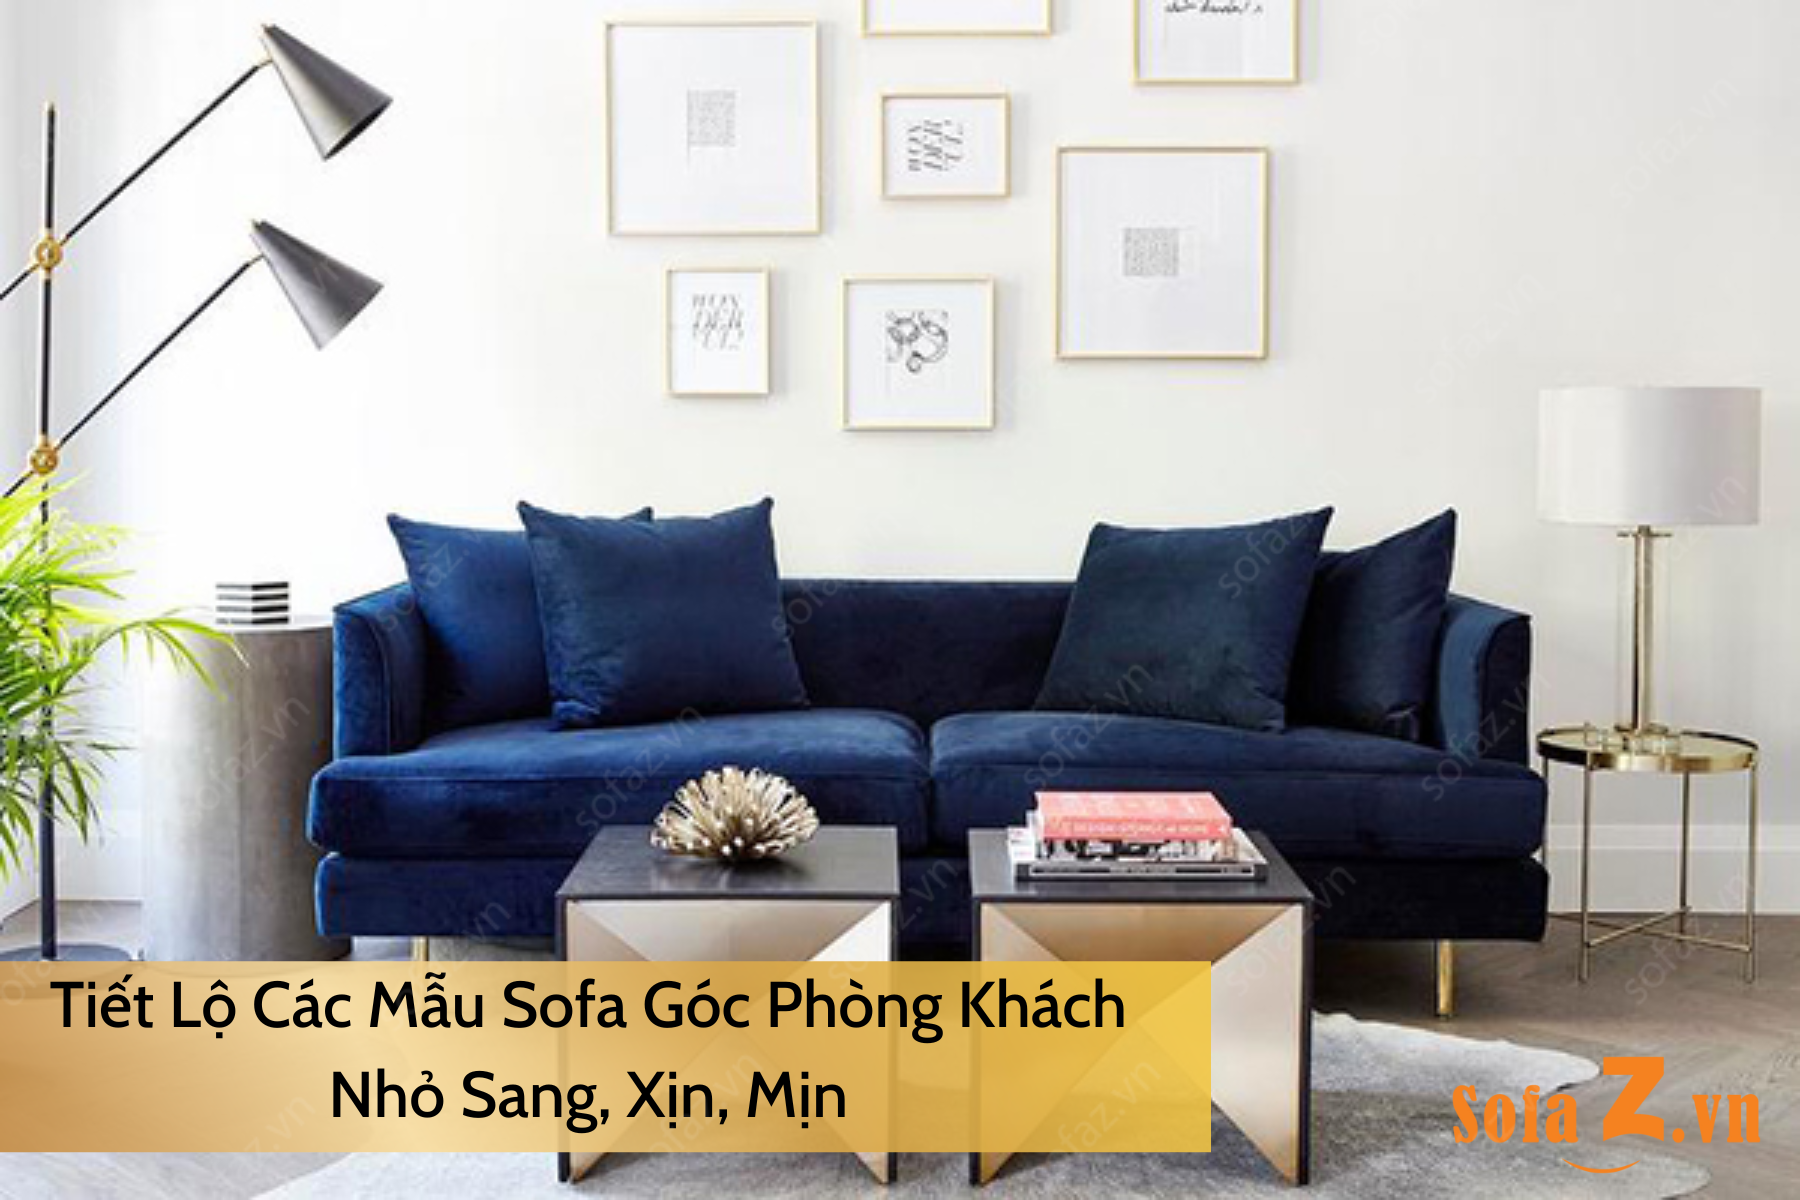 Tiết Lộ Các Mẫu Sofa Góc Phòng Khách Nhỏ Sang, Xịn, Mịn